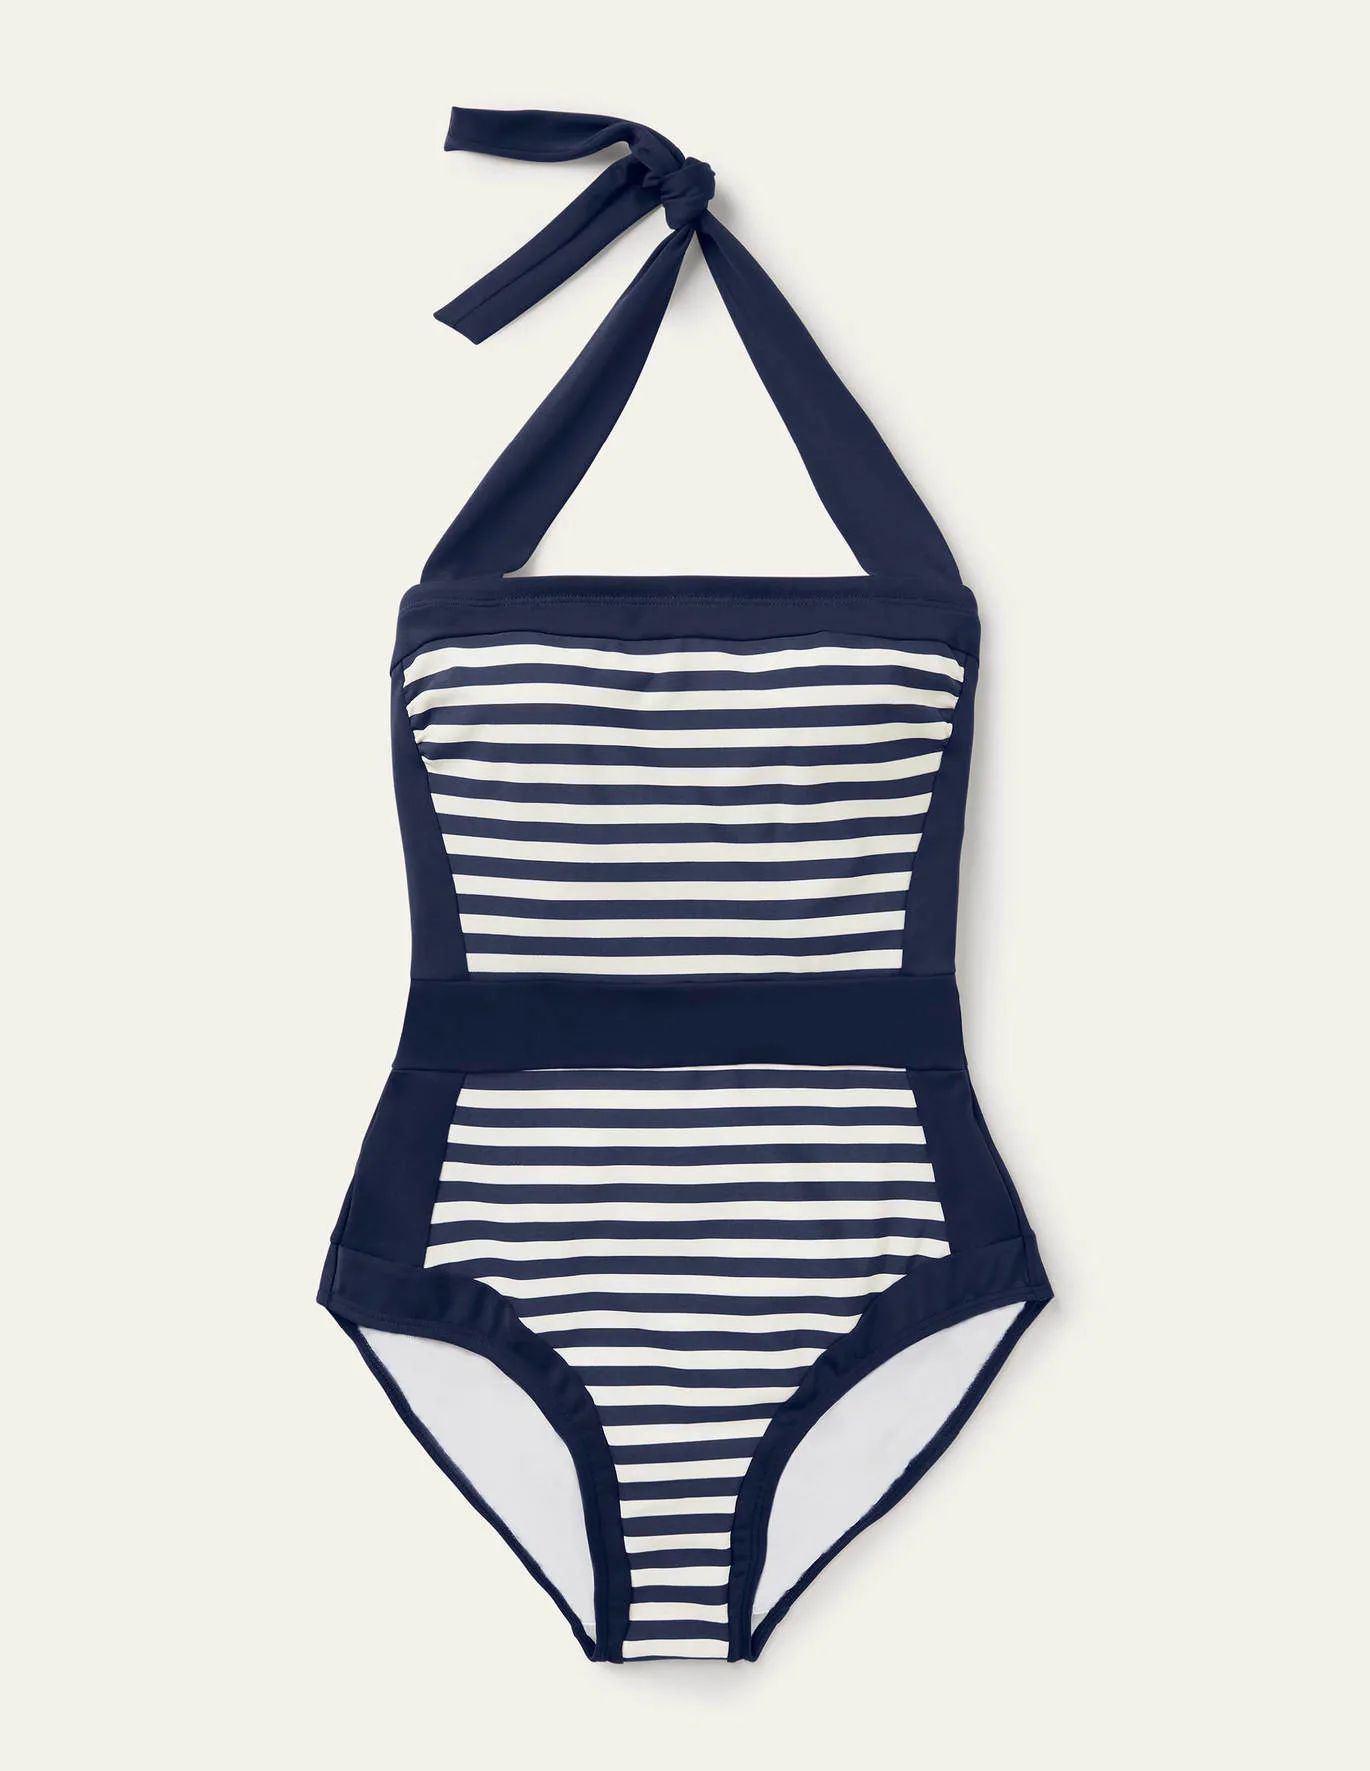 Santorini Halterneck Swimsuit - French Navy, Ivory Stripe | Boden (US)